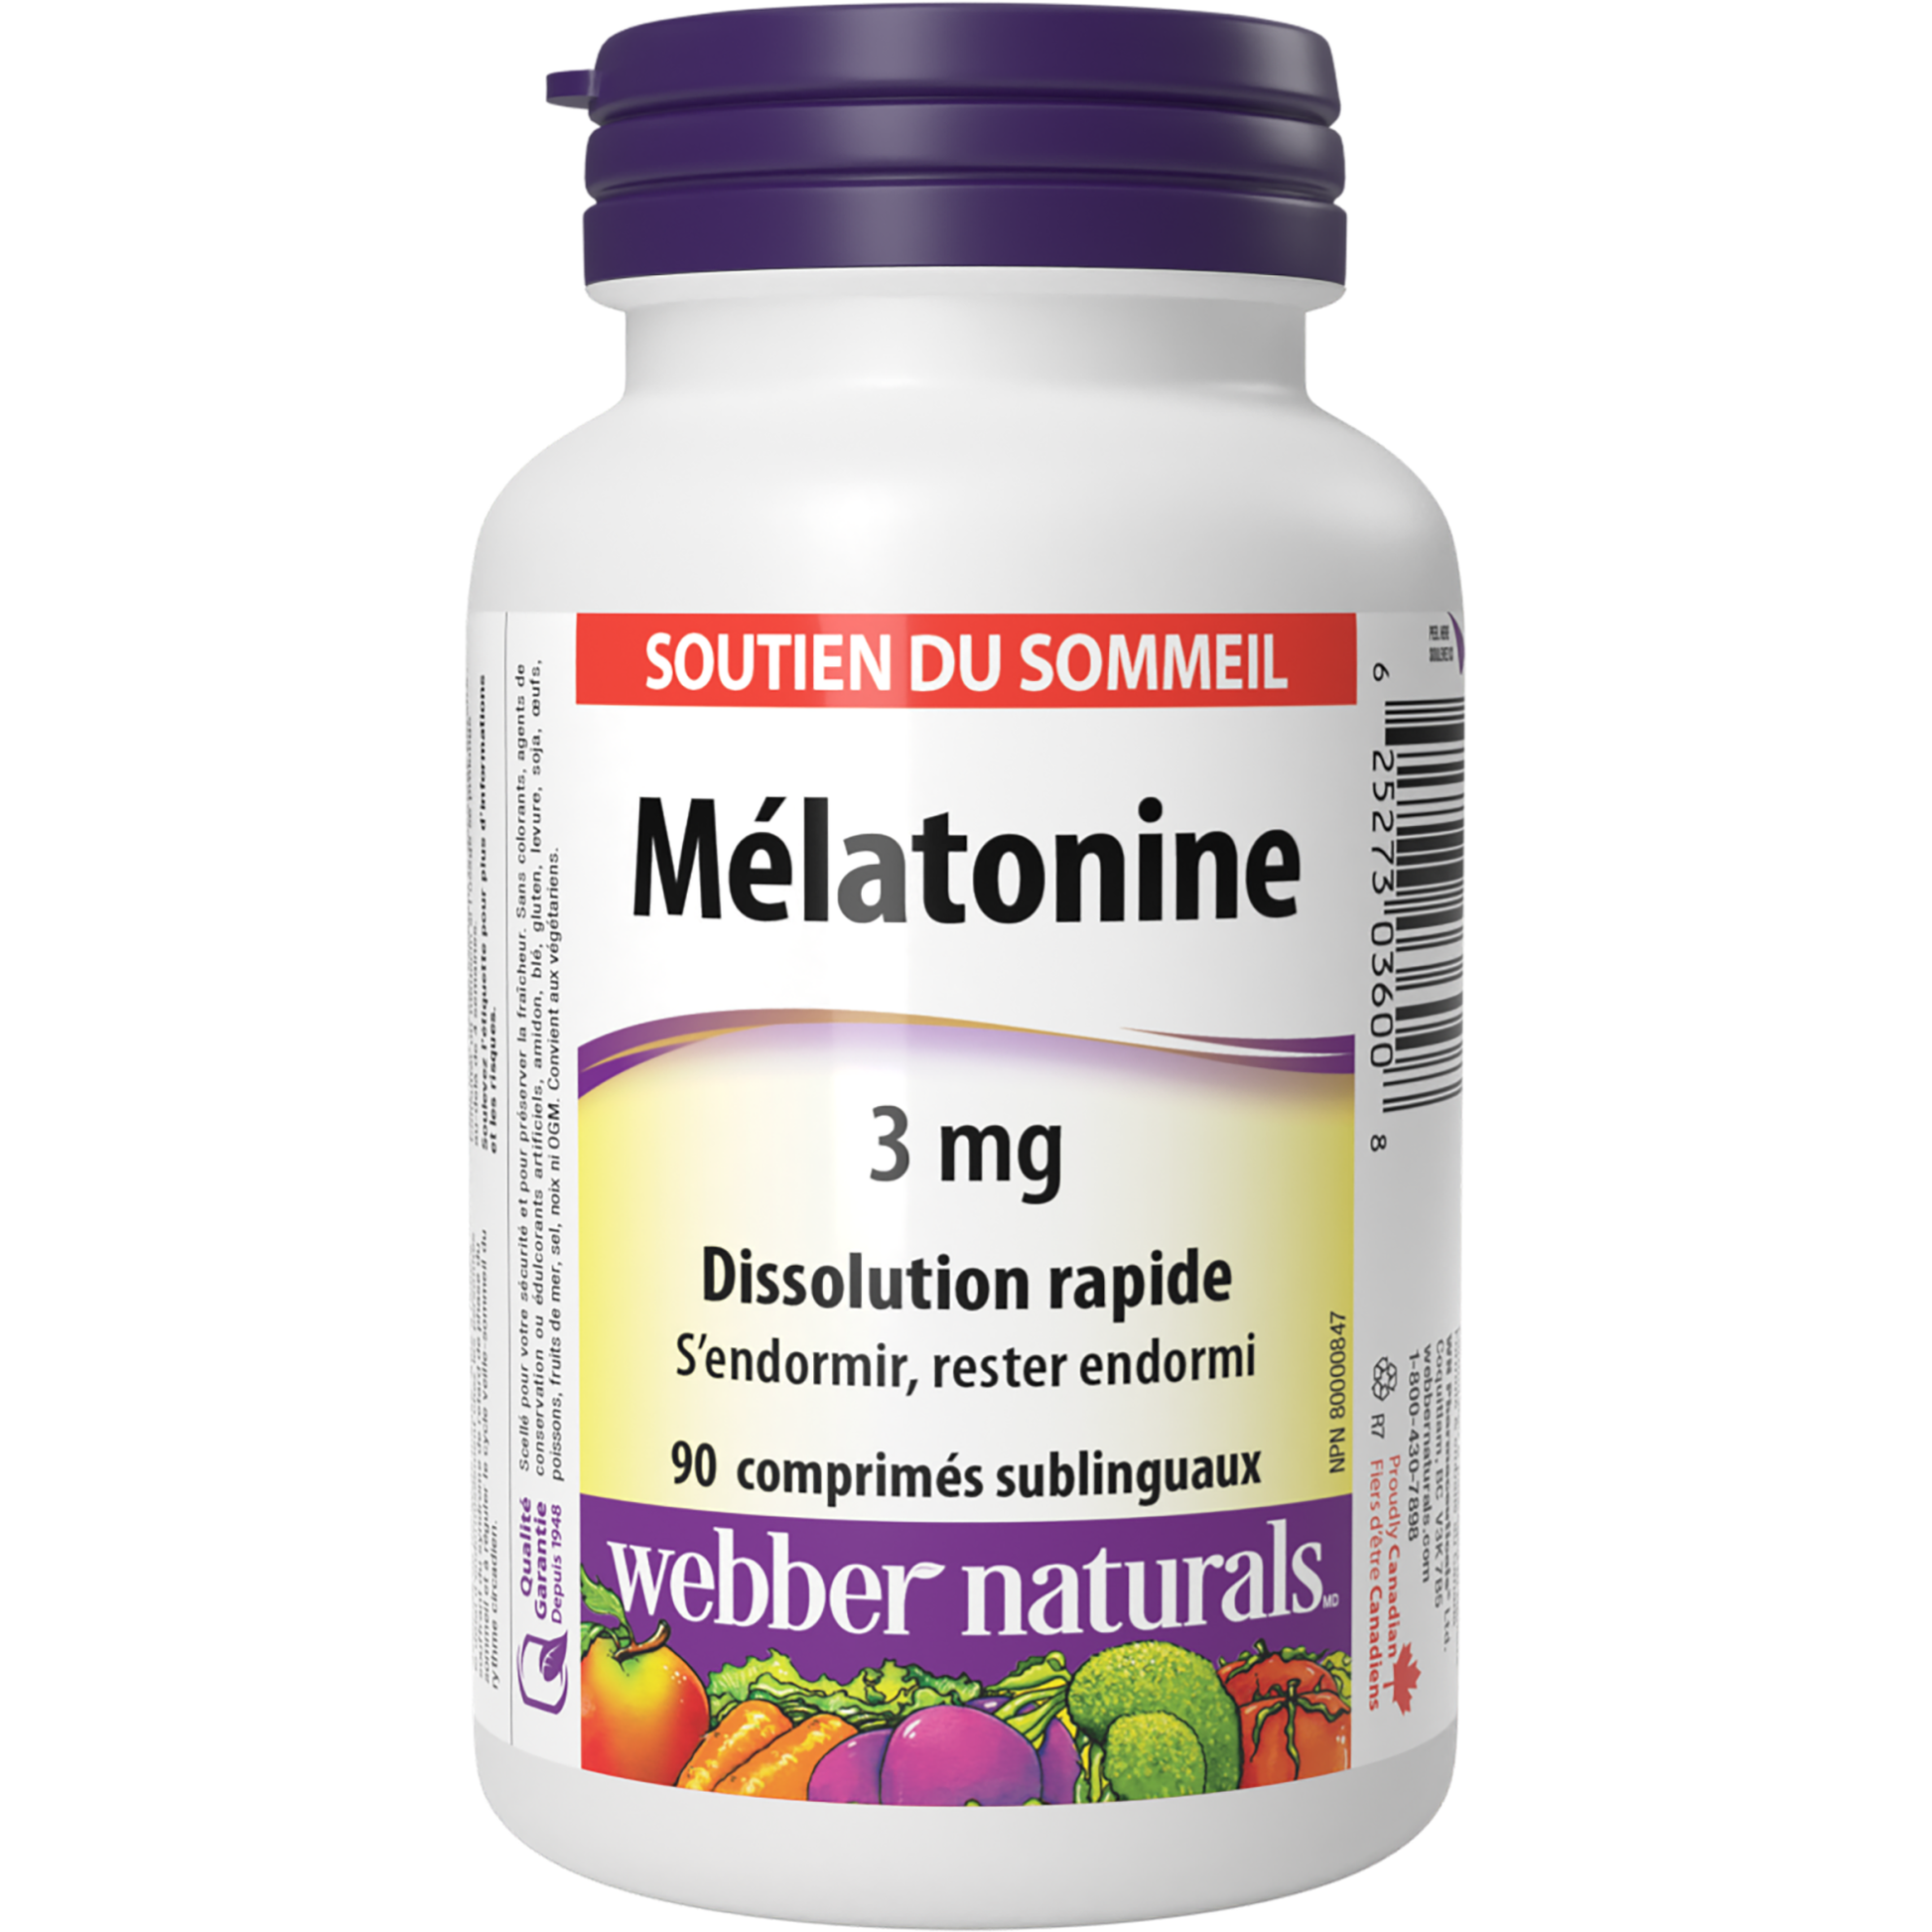 Mélatonine Dissolution rapide 3 mg for Webber Naturals|v|hi-res|WN3600